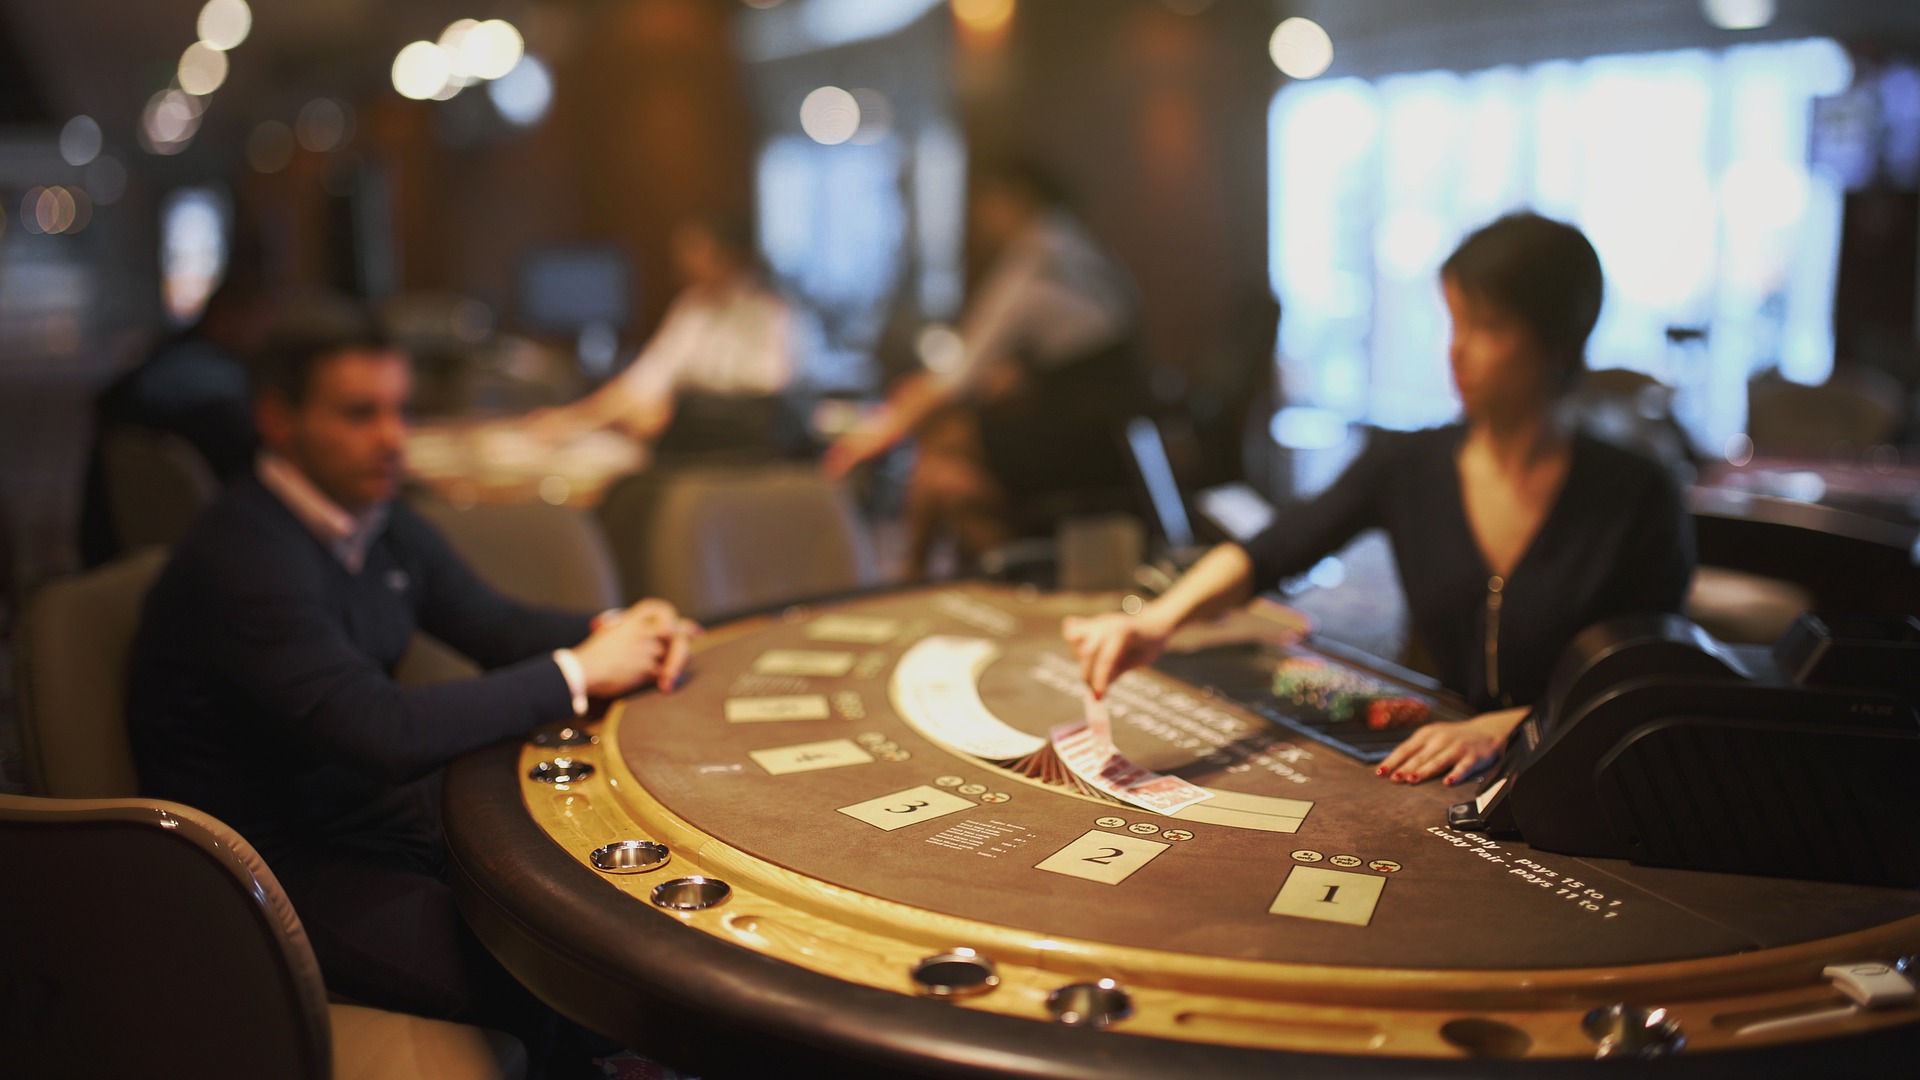 Halbrunder Blackjack-Tisch in der Spielbank mit Spieler und Dealer.